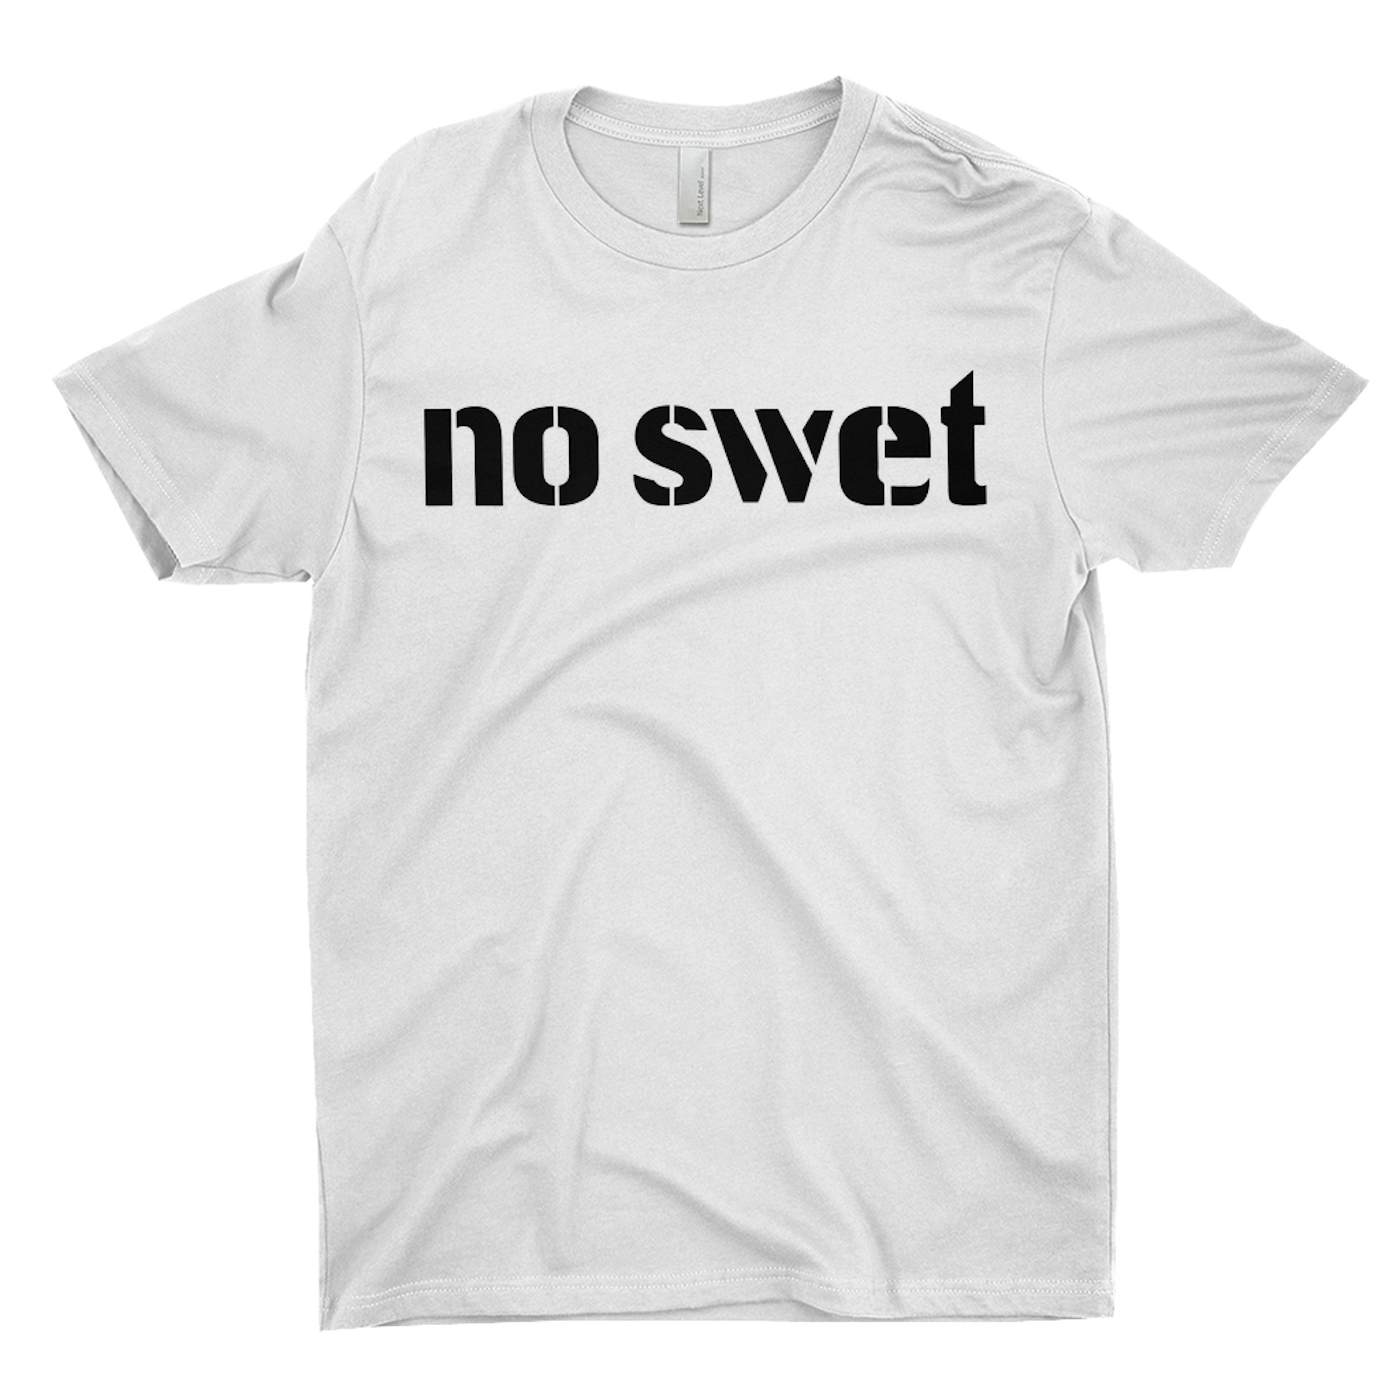 Diana Ross T-Shirt | No Swet Worn By Diana Ross Diana Ross Shirt